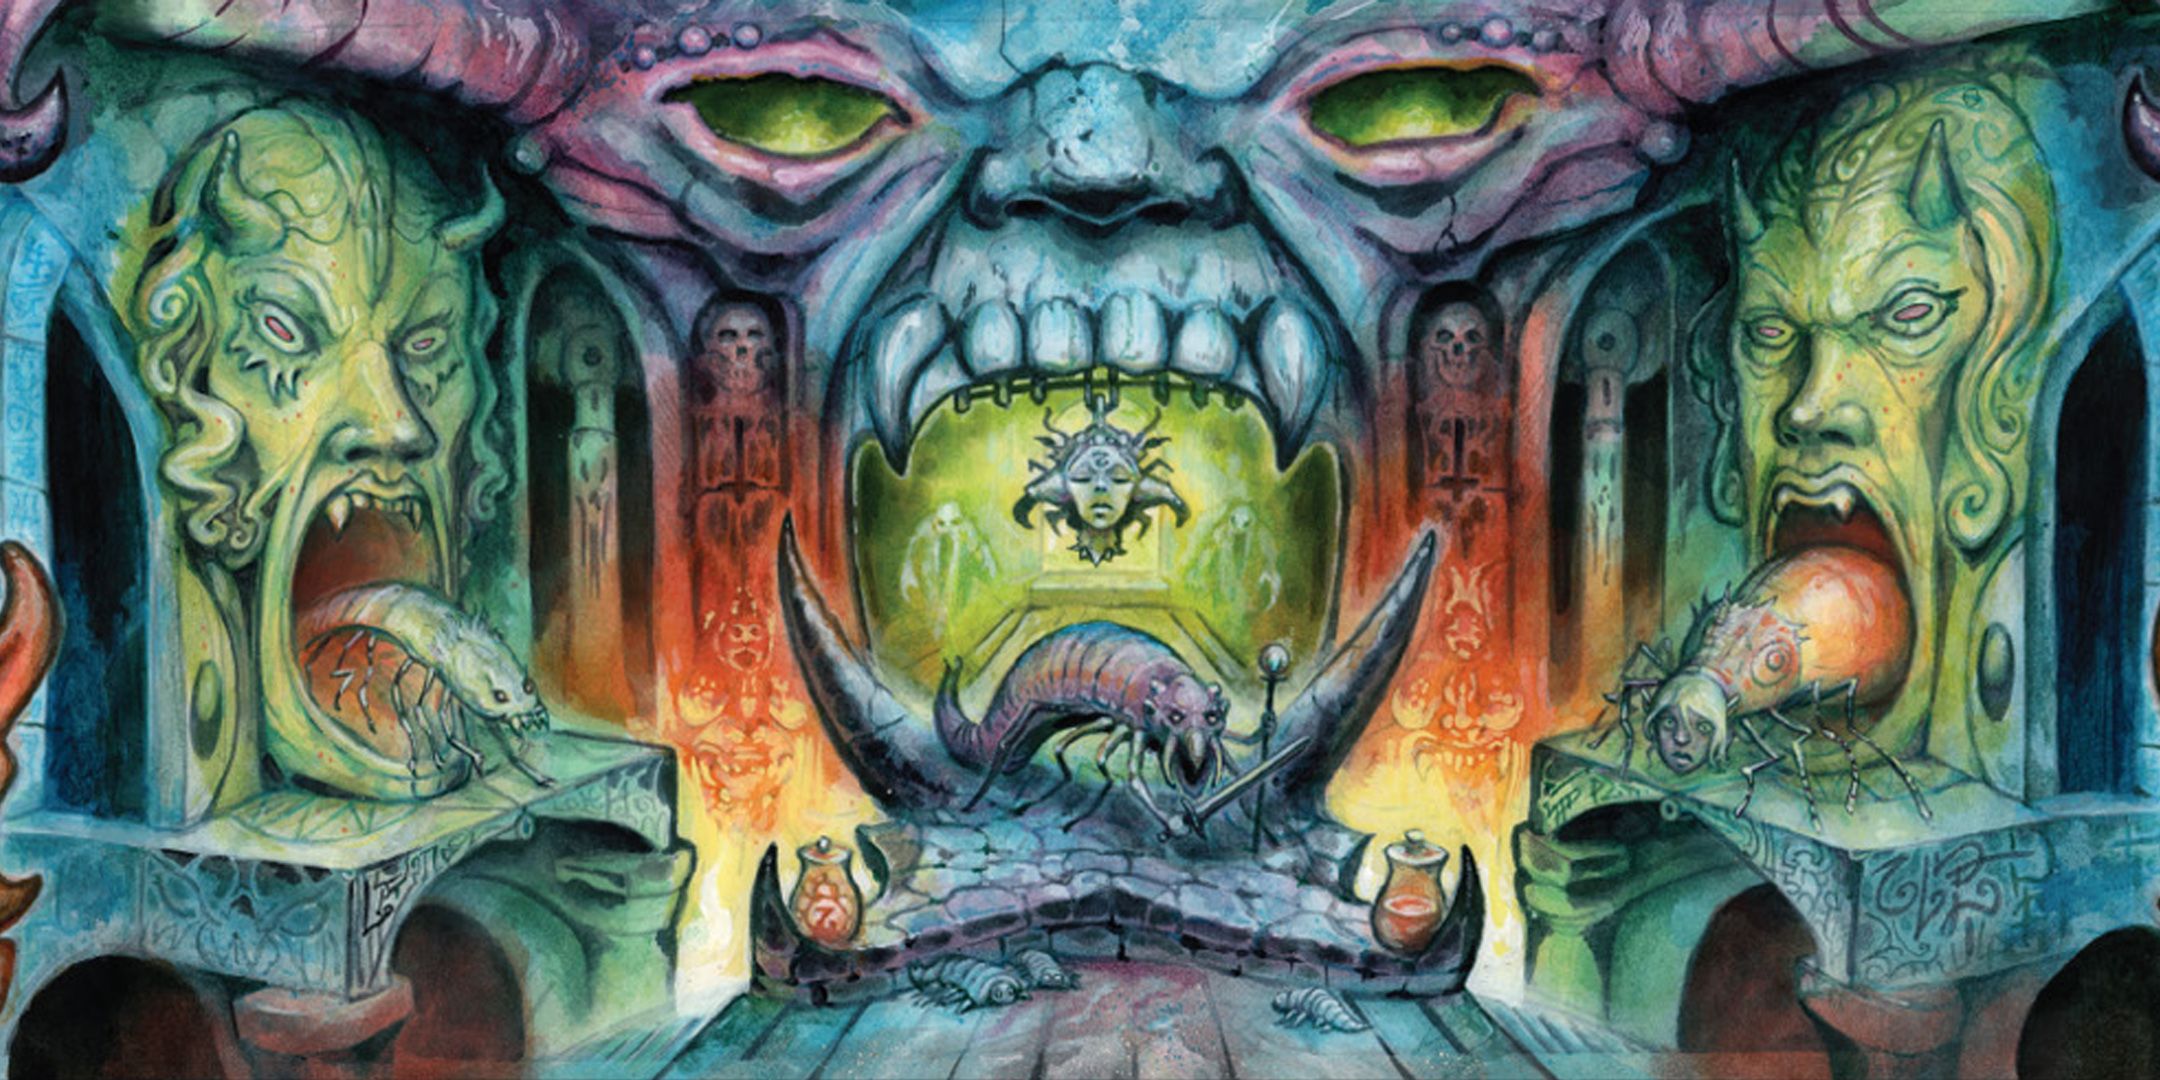 Arte da tela do mestre do jogo em Dungeon Crawl Classics mostrando uma masmorra com criaturas semelhantes a insetos.